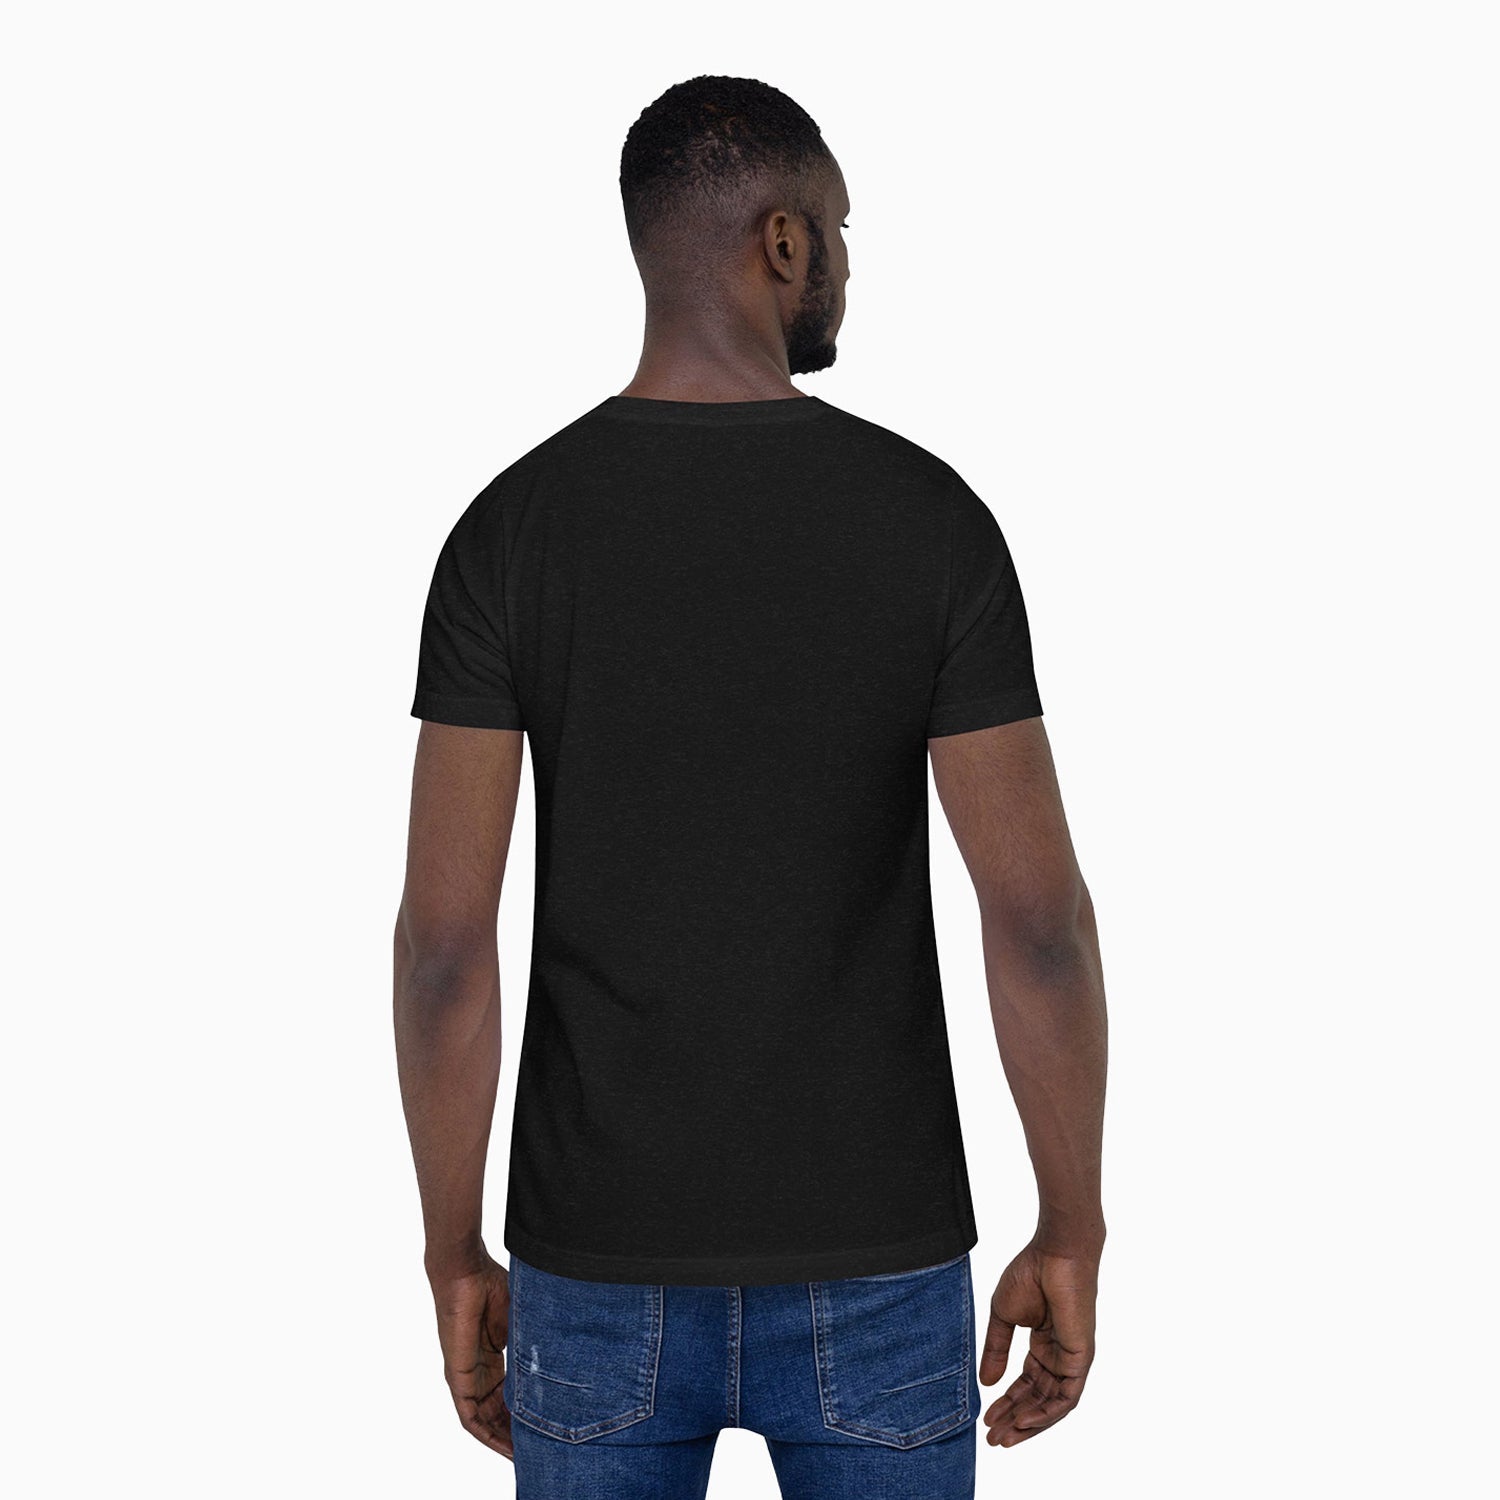 cut-off-design-printed-crew-neck-black-t-shirt-for-men-stwr7001-black